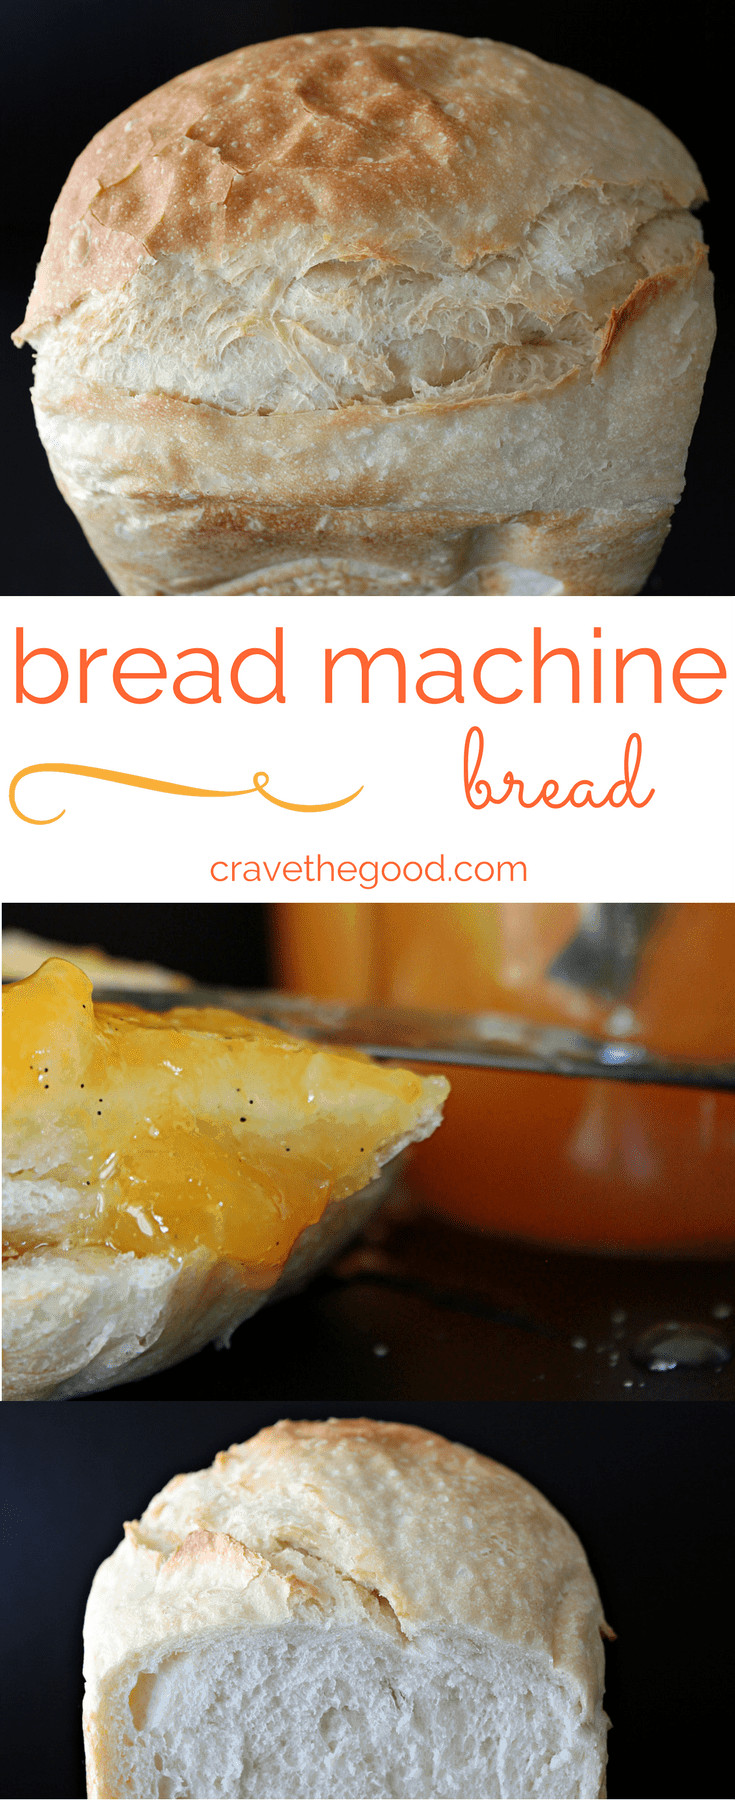 Keto Sandwich Bread Bread Machine
 The Best Bread Machine Recipe